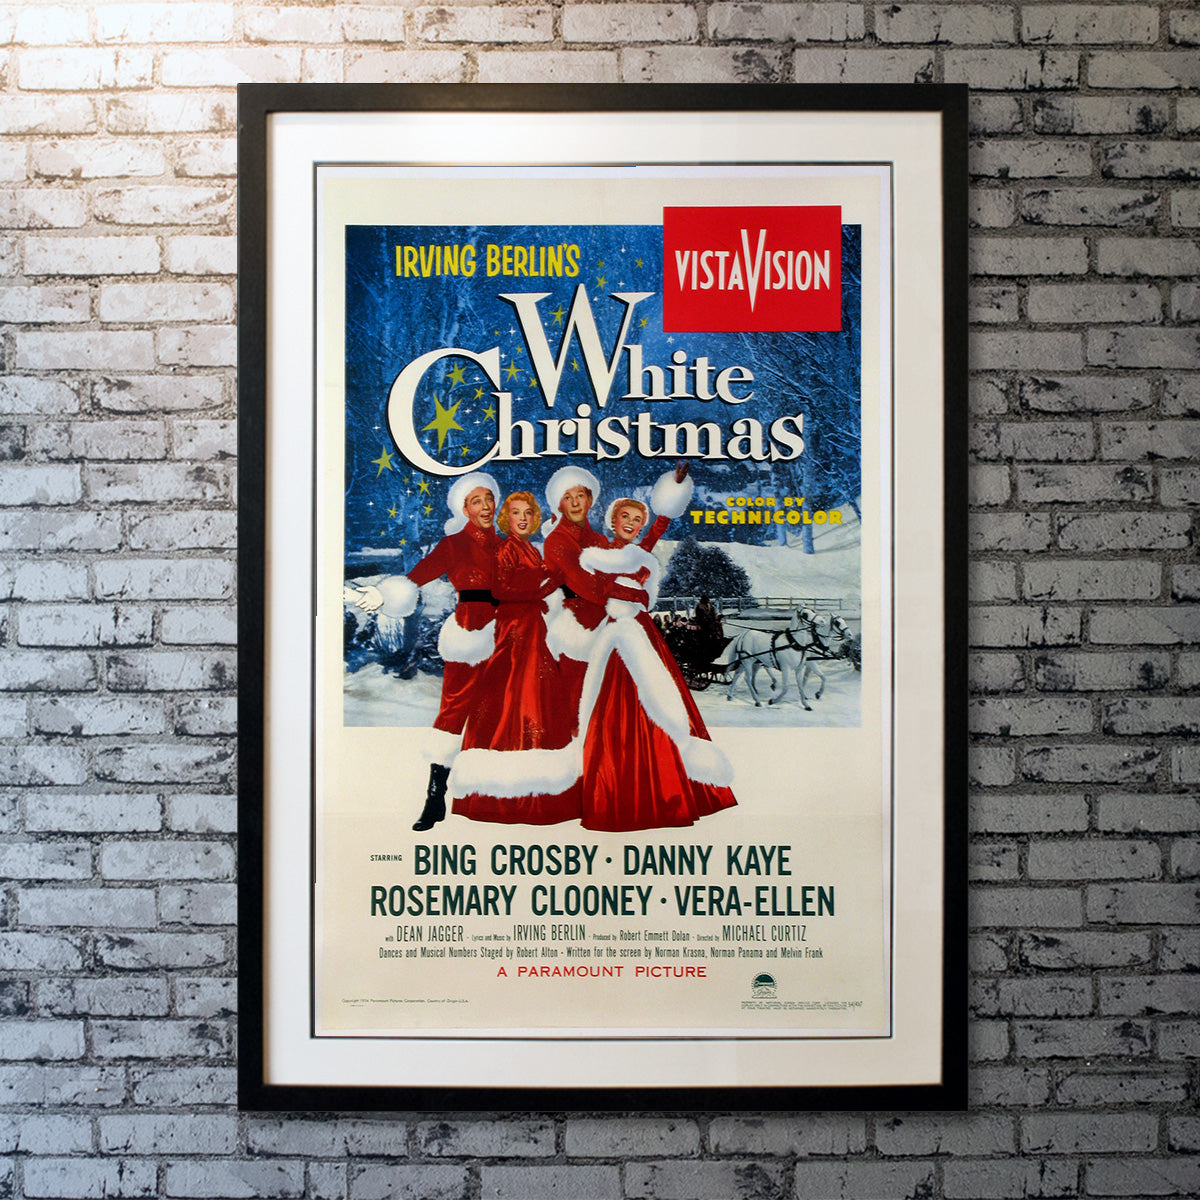 Original Movie Poster of White Christmas (1954)